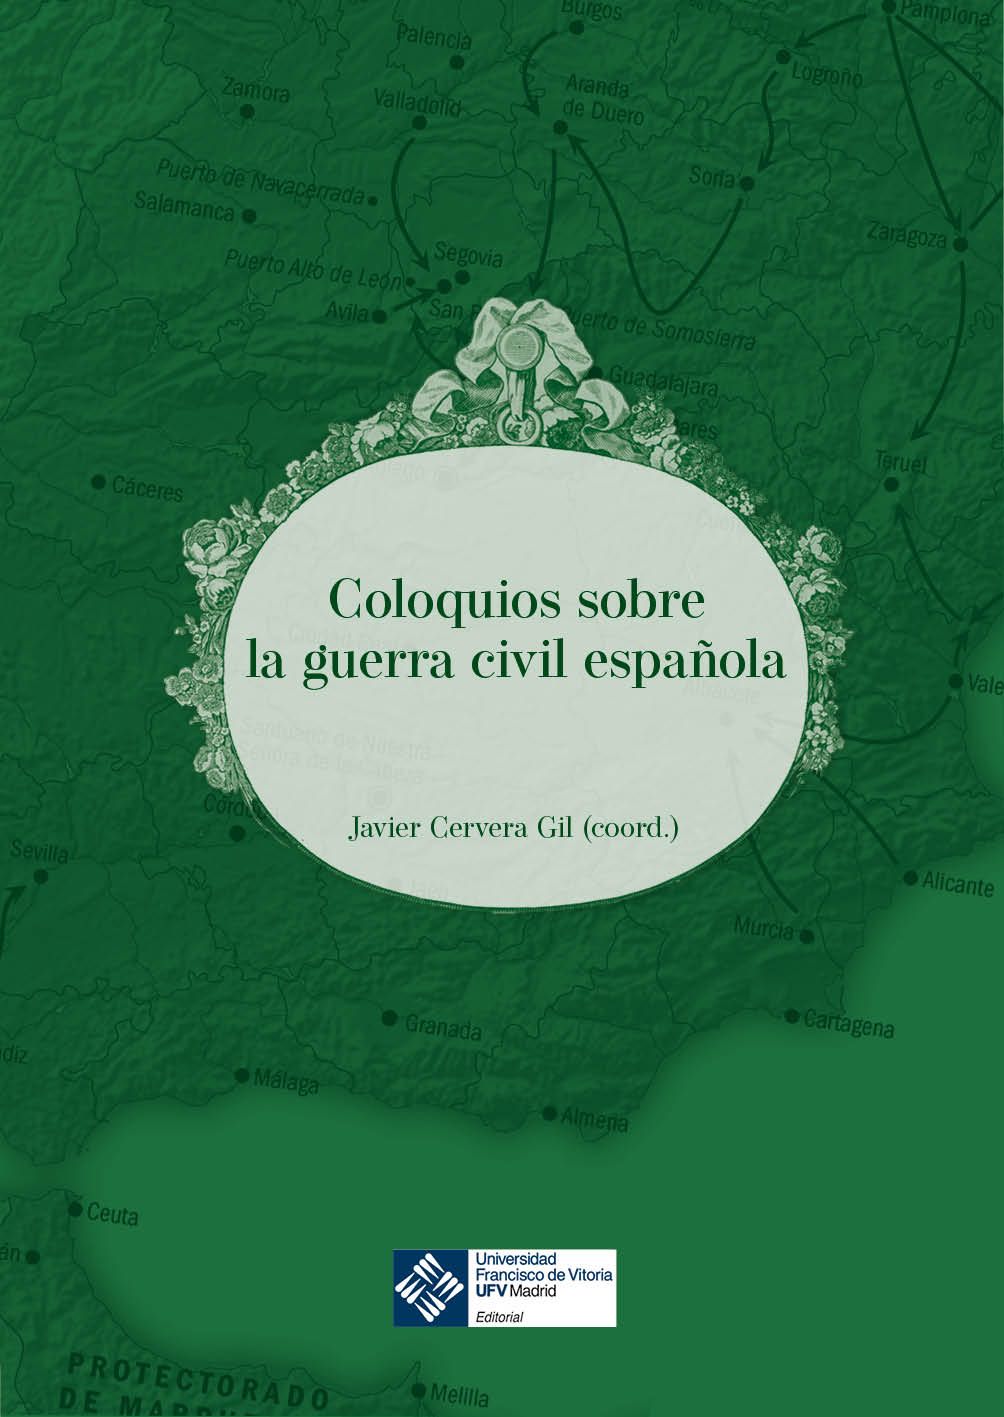 Imagen de portada del libro Coloquios sobre la guerra civil española